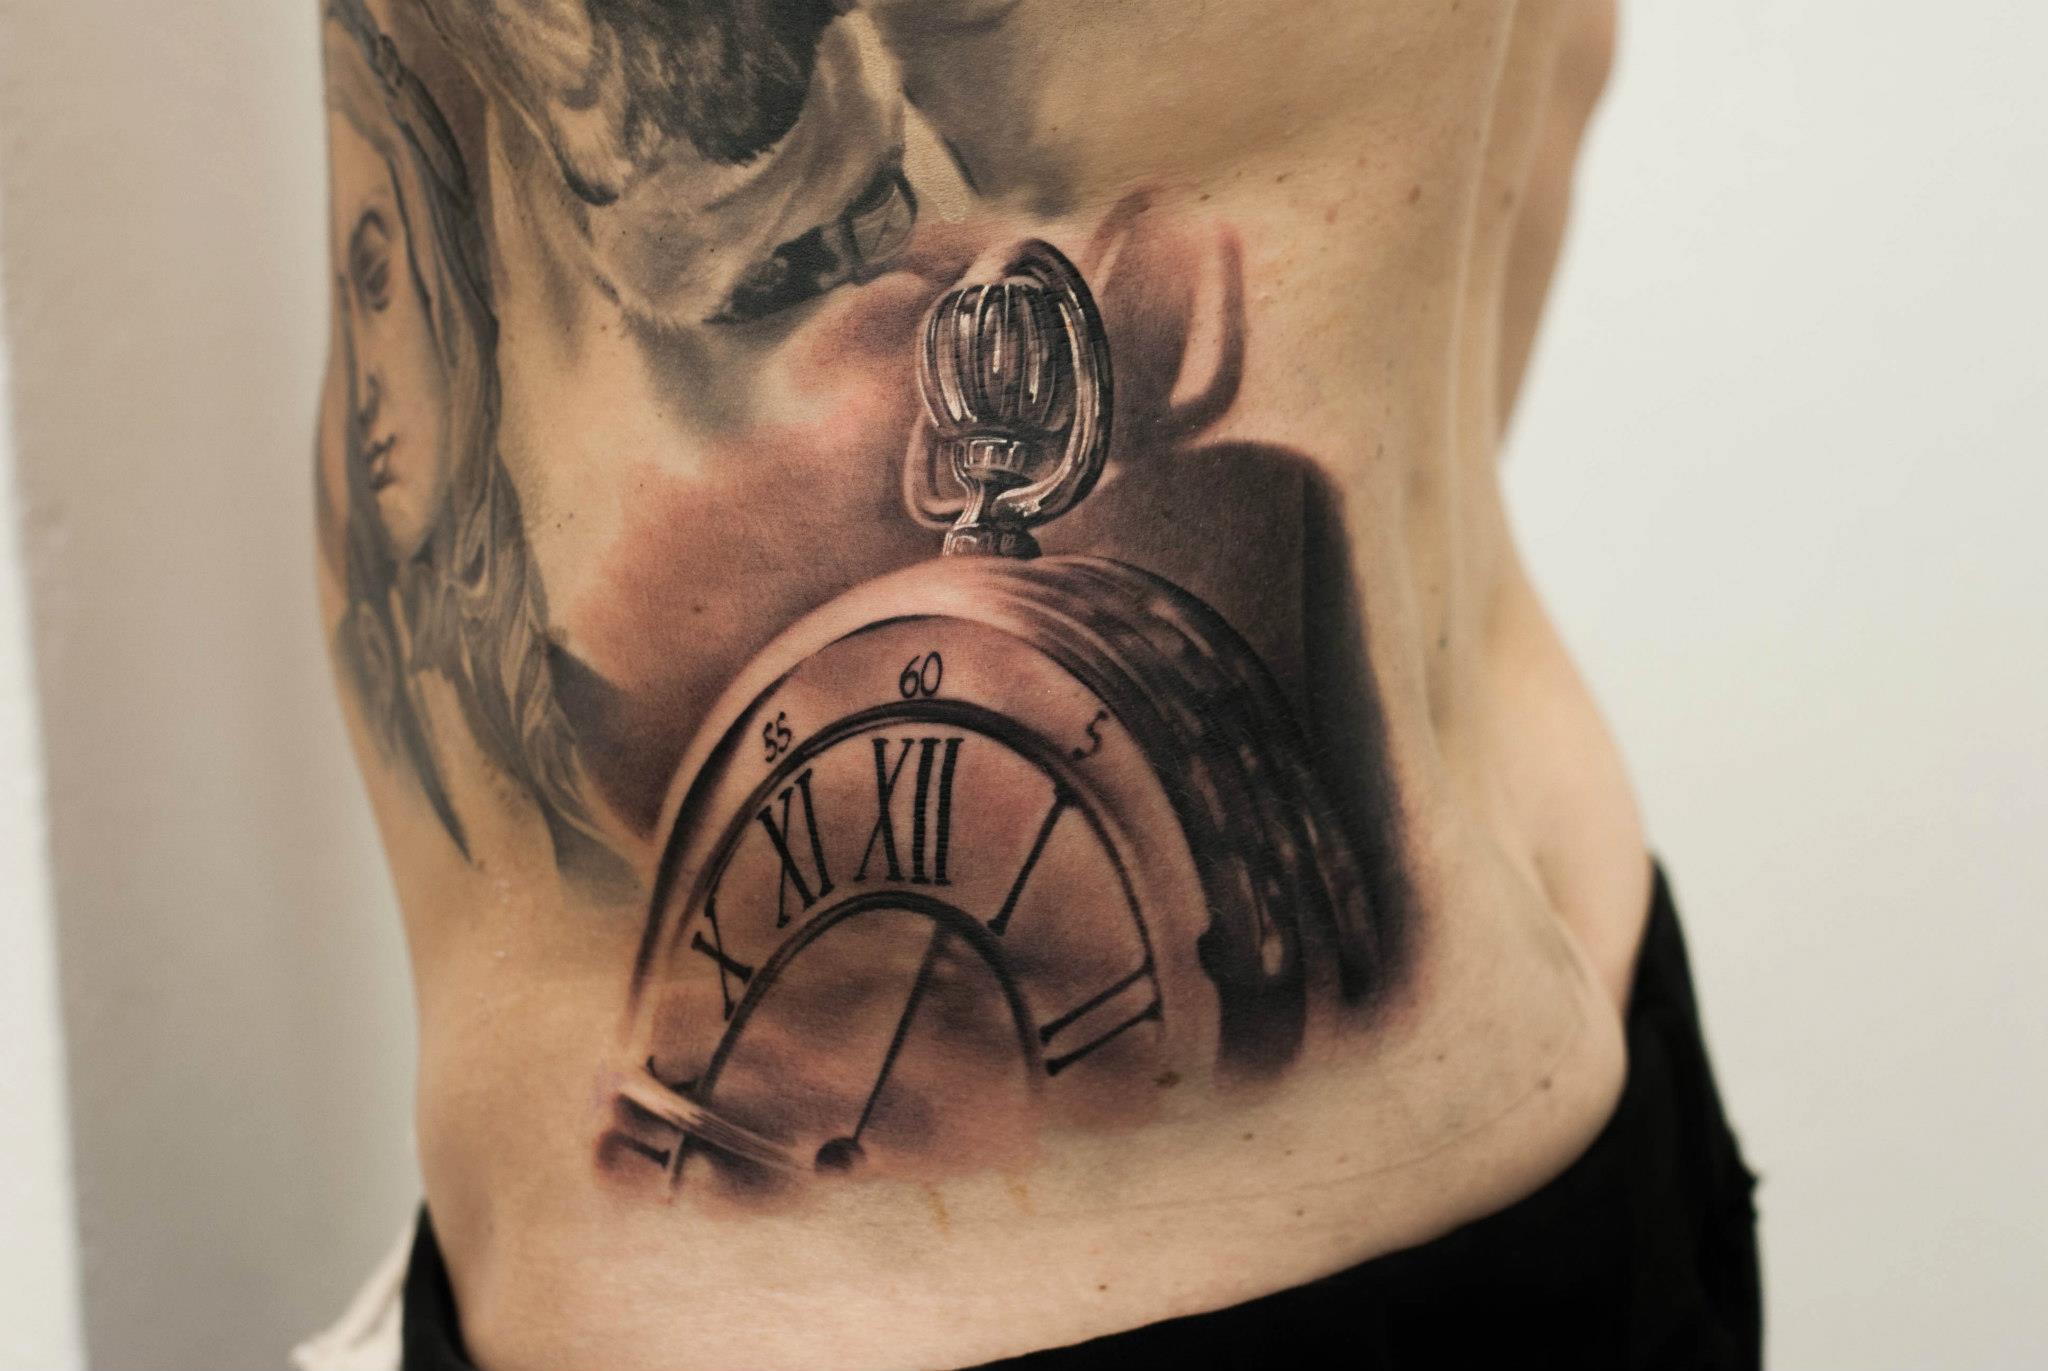 Tatuaje de un reloj de bolsillo en la cadera